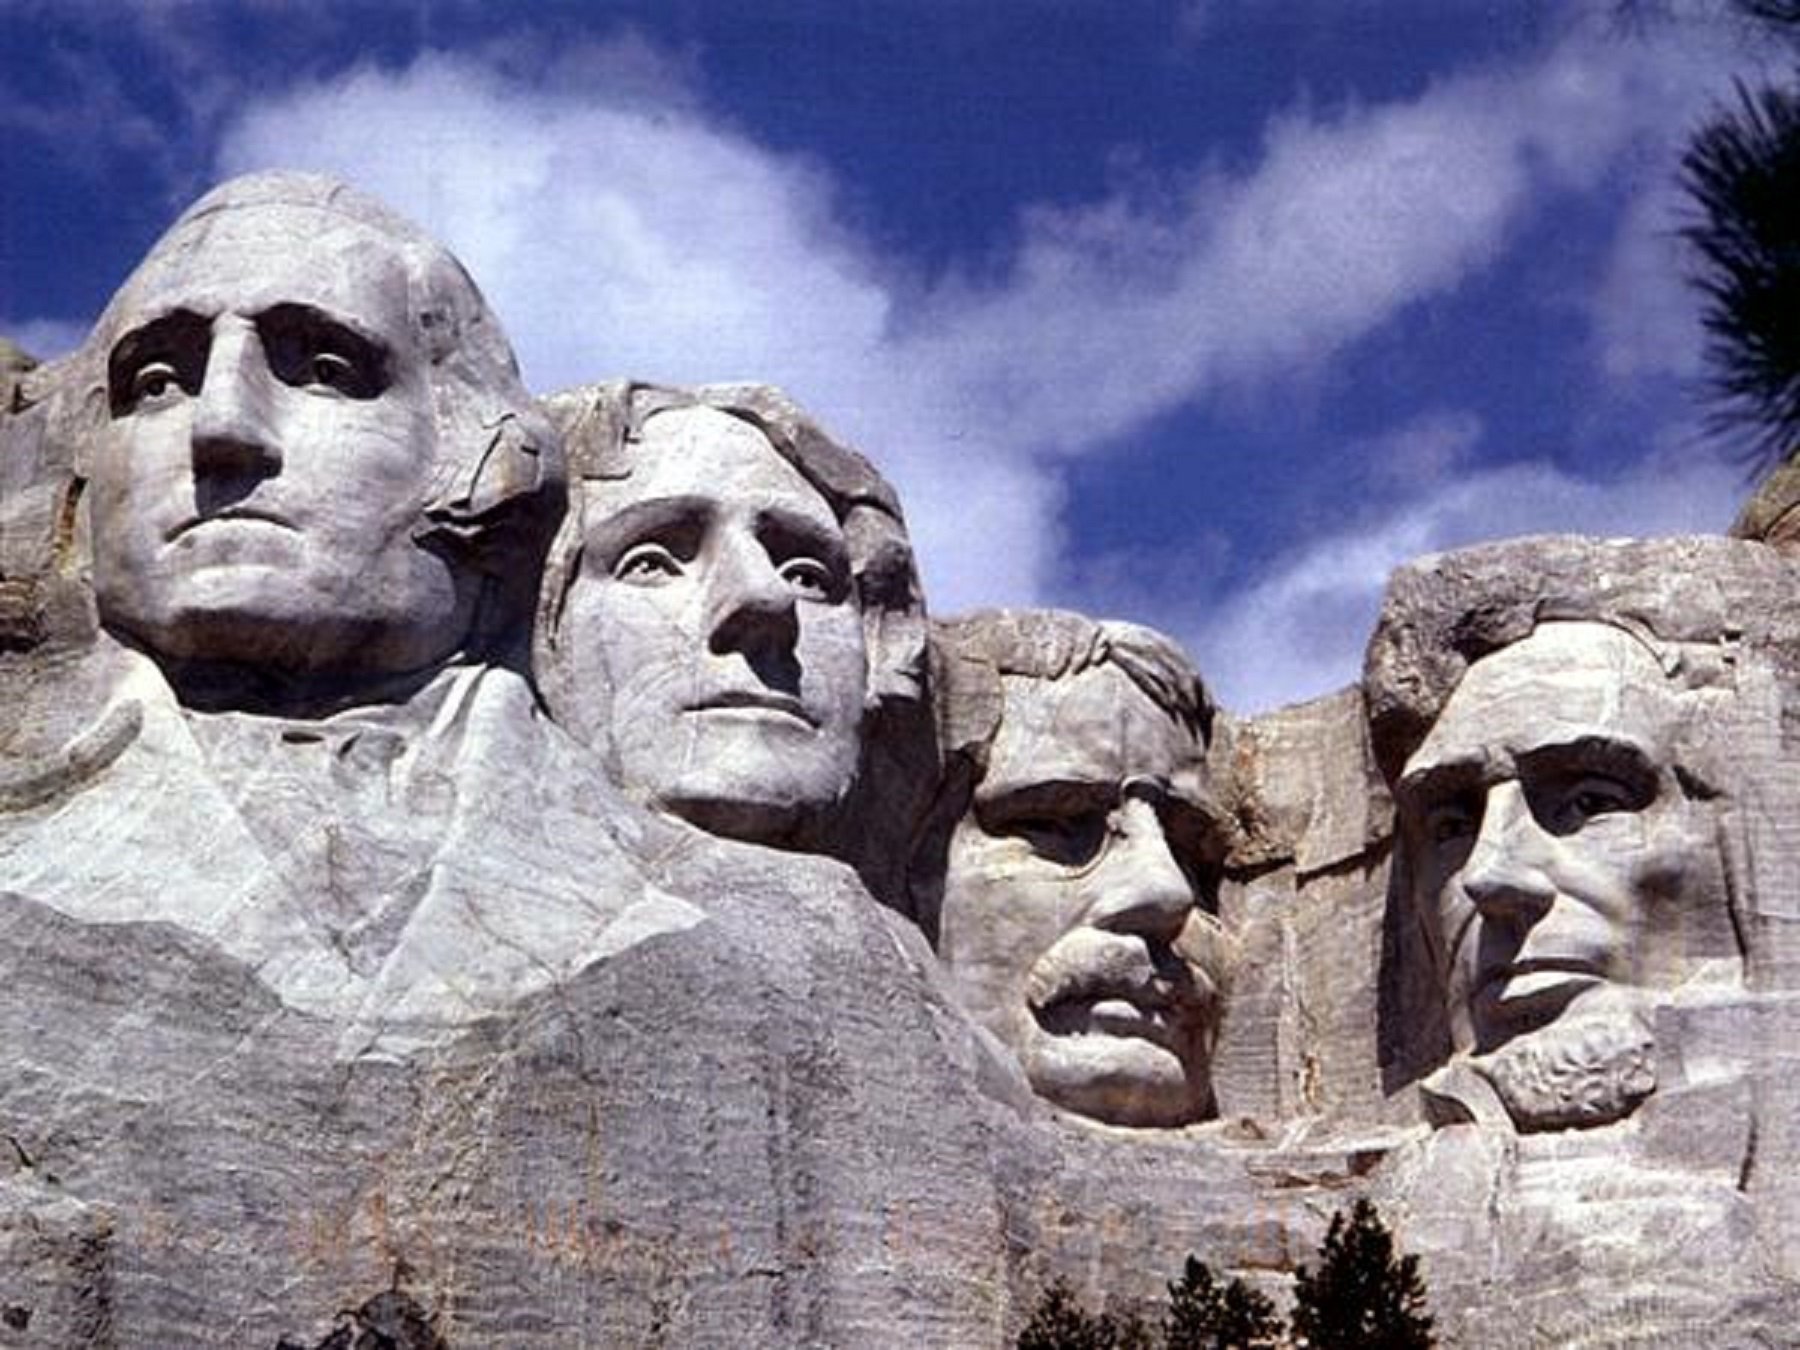 Trump té ganes de veure's al mont Rushmore